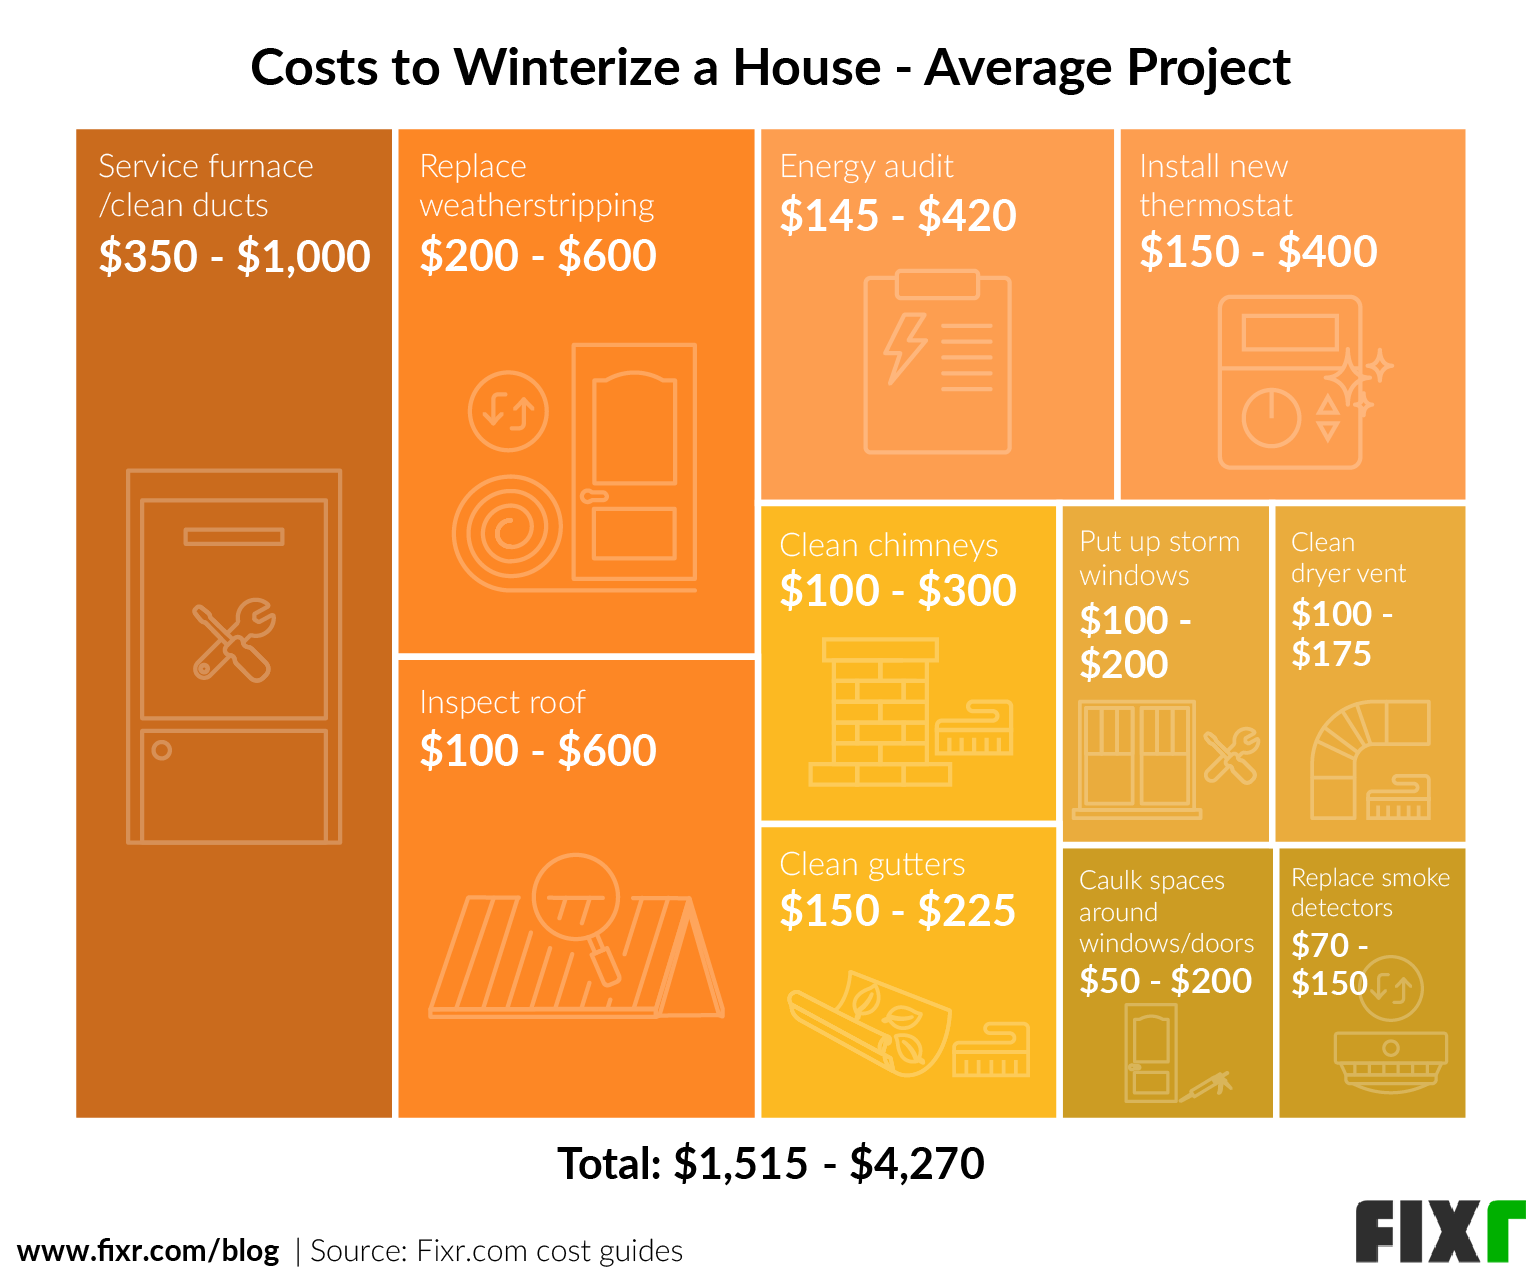 Winterize Home Checklist & Cost (Average Project)